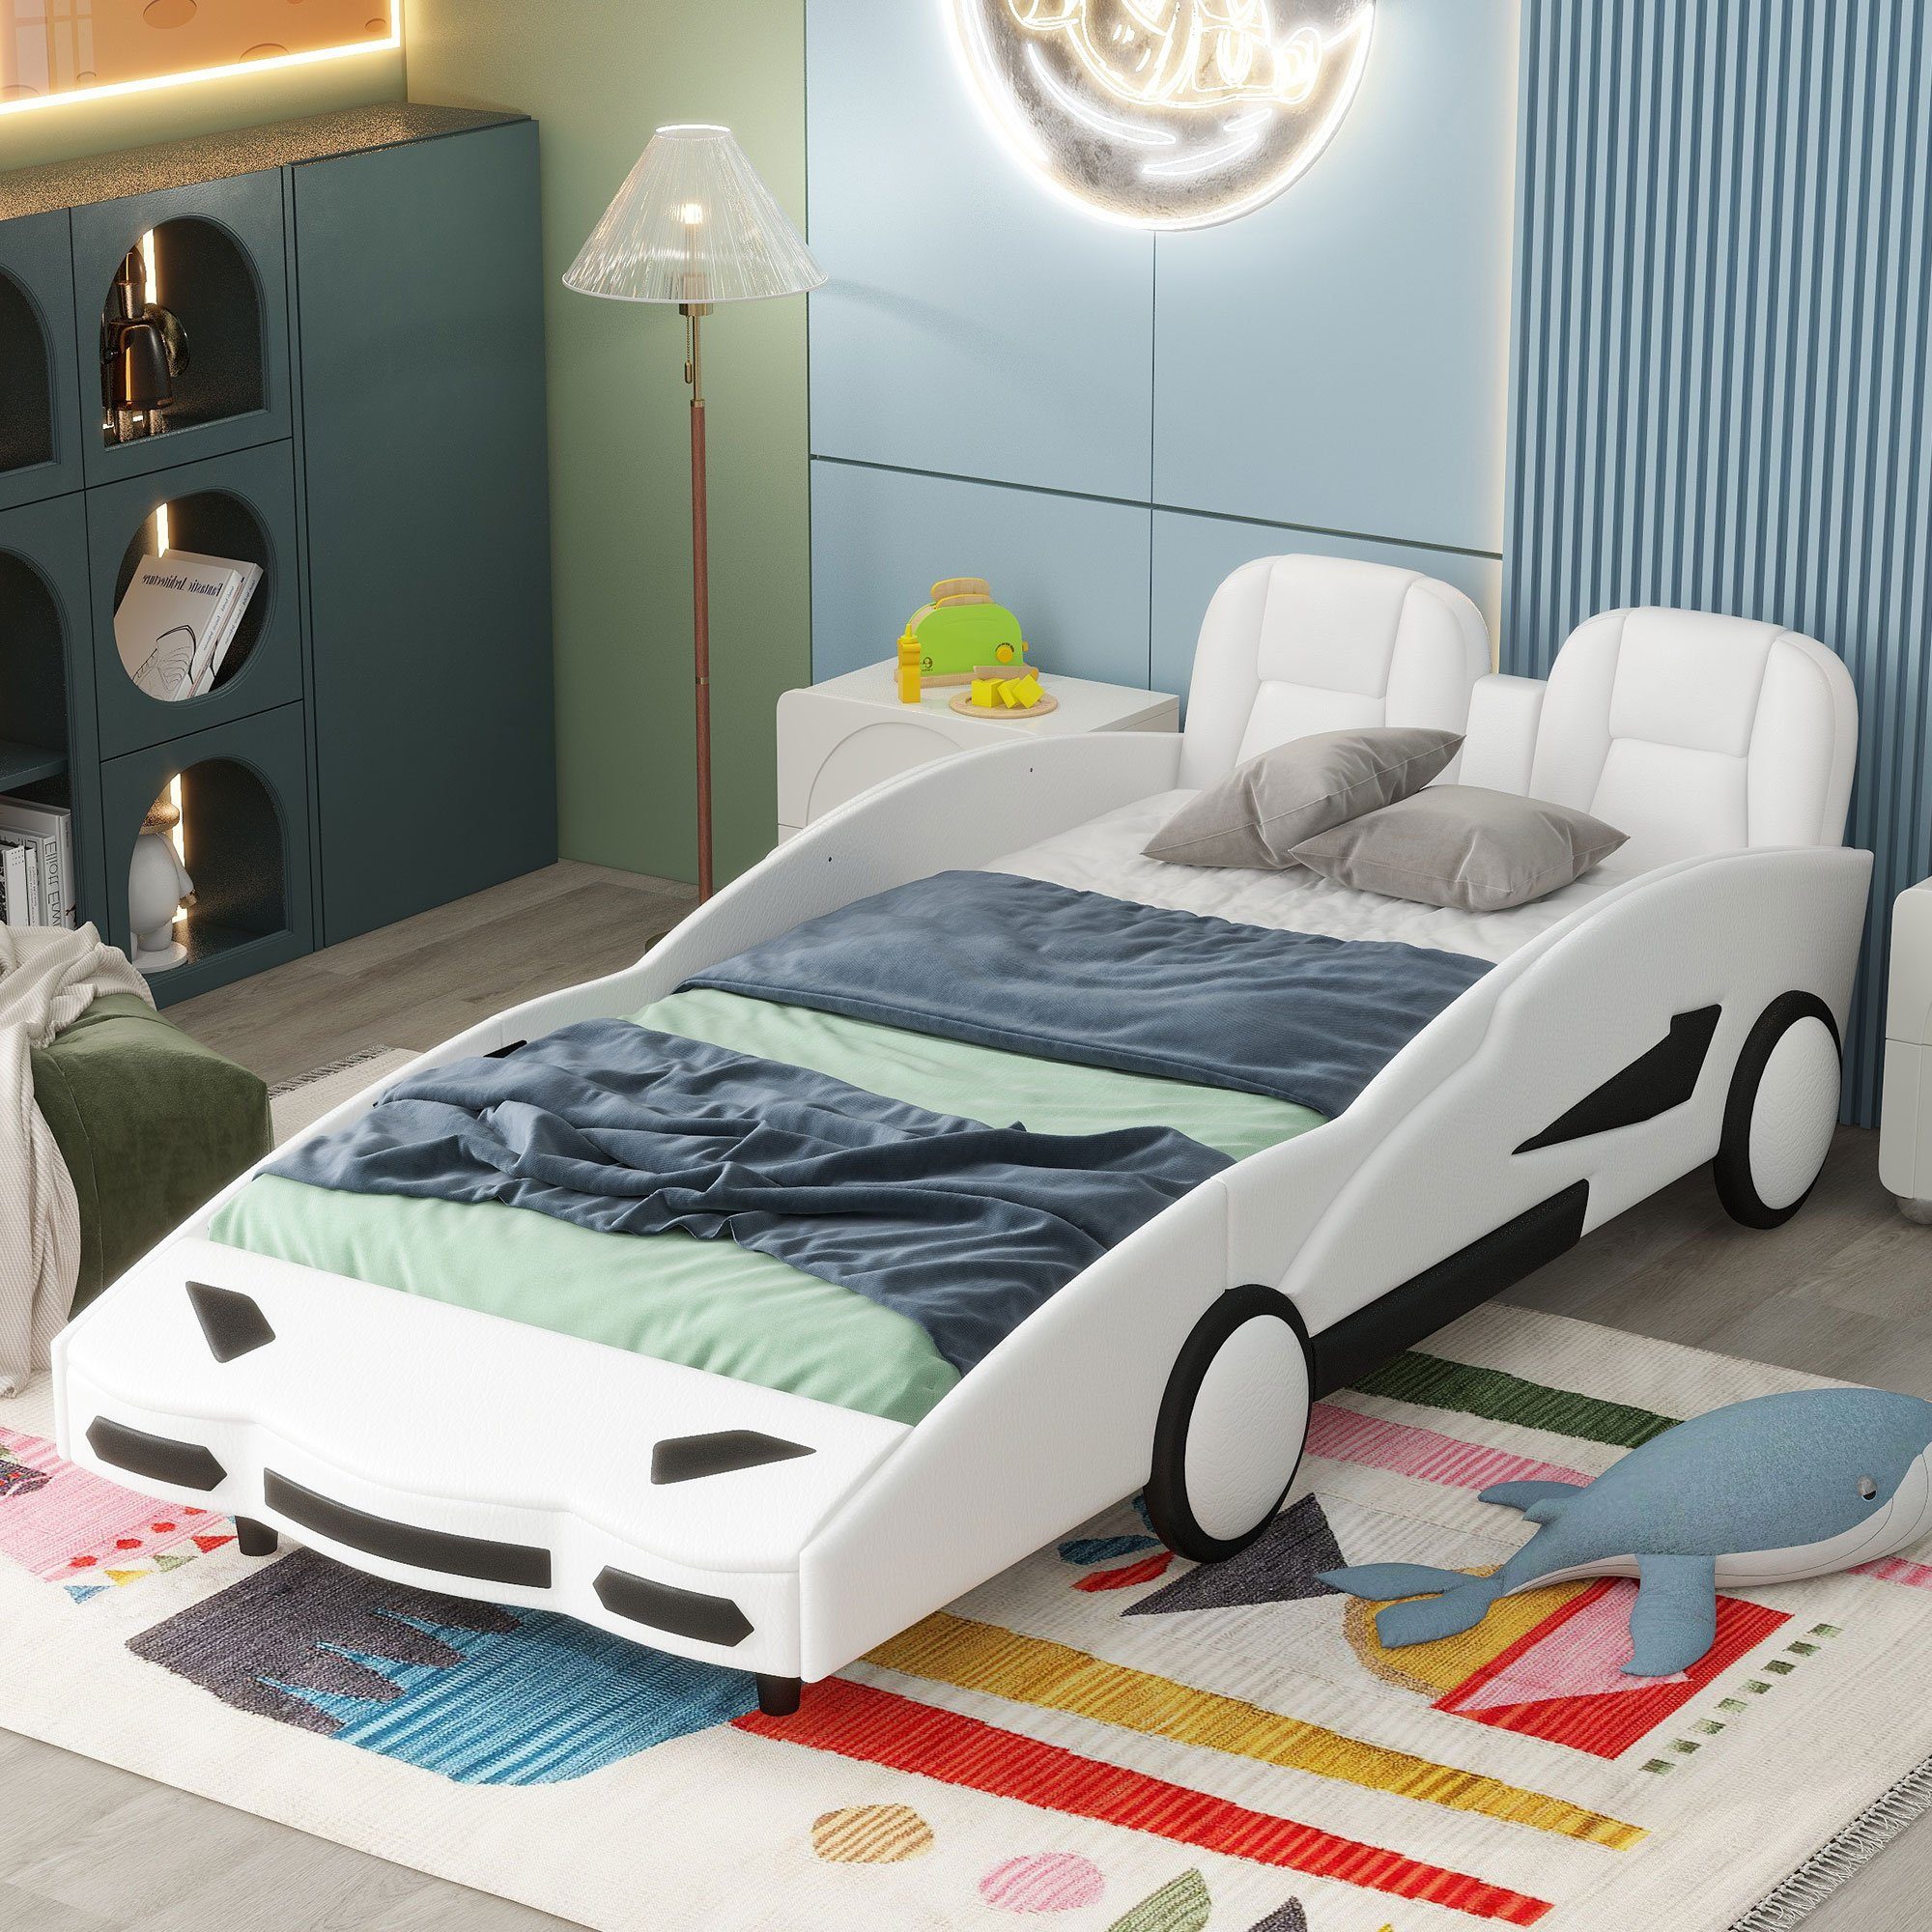 Ulife Autobett Kinderbett Spielbett Flachbett mit Rausfallschutz, 90×200cm, Kunstleder Weiß